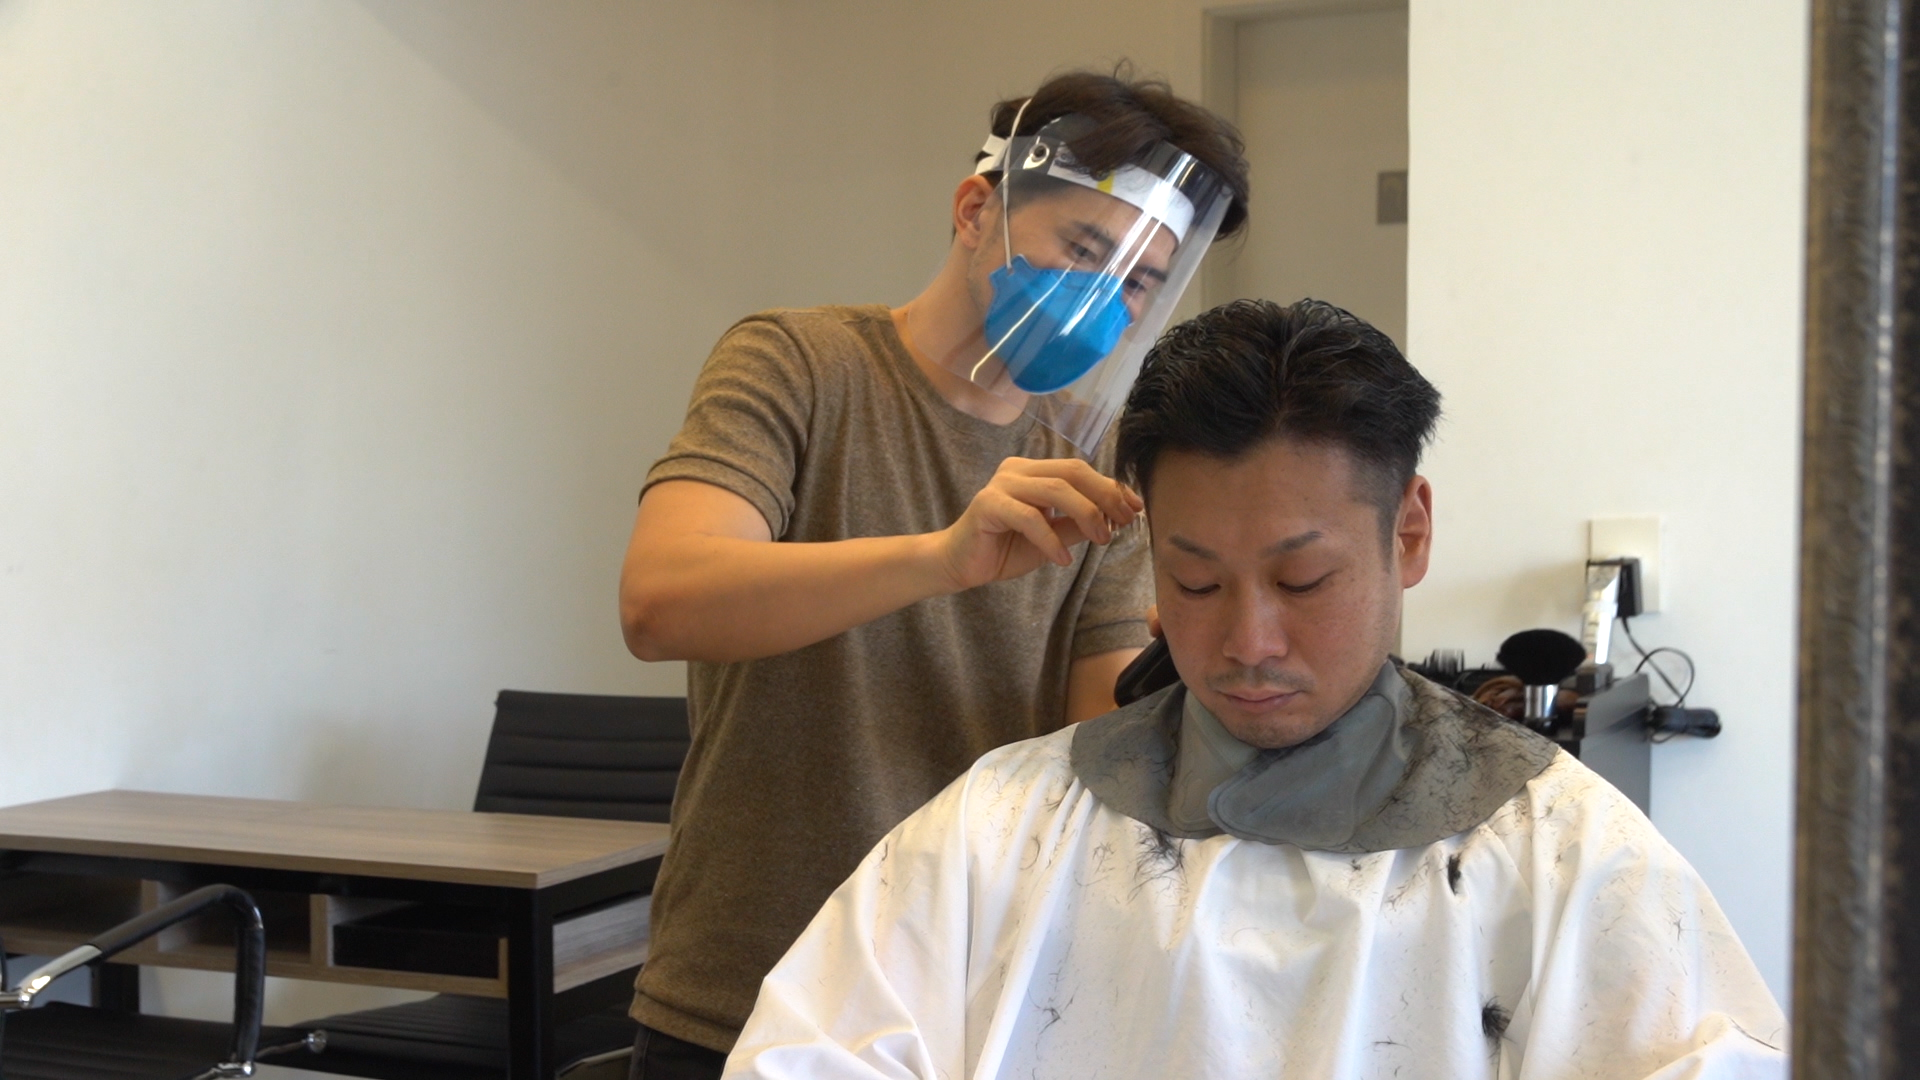 ブラジル 韓国 インド 文化の違いを乗り越え 海外で挑戦する日本人美容師の仕事に密着 7 5 日 Backstage バックステージ Newscast